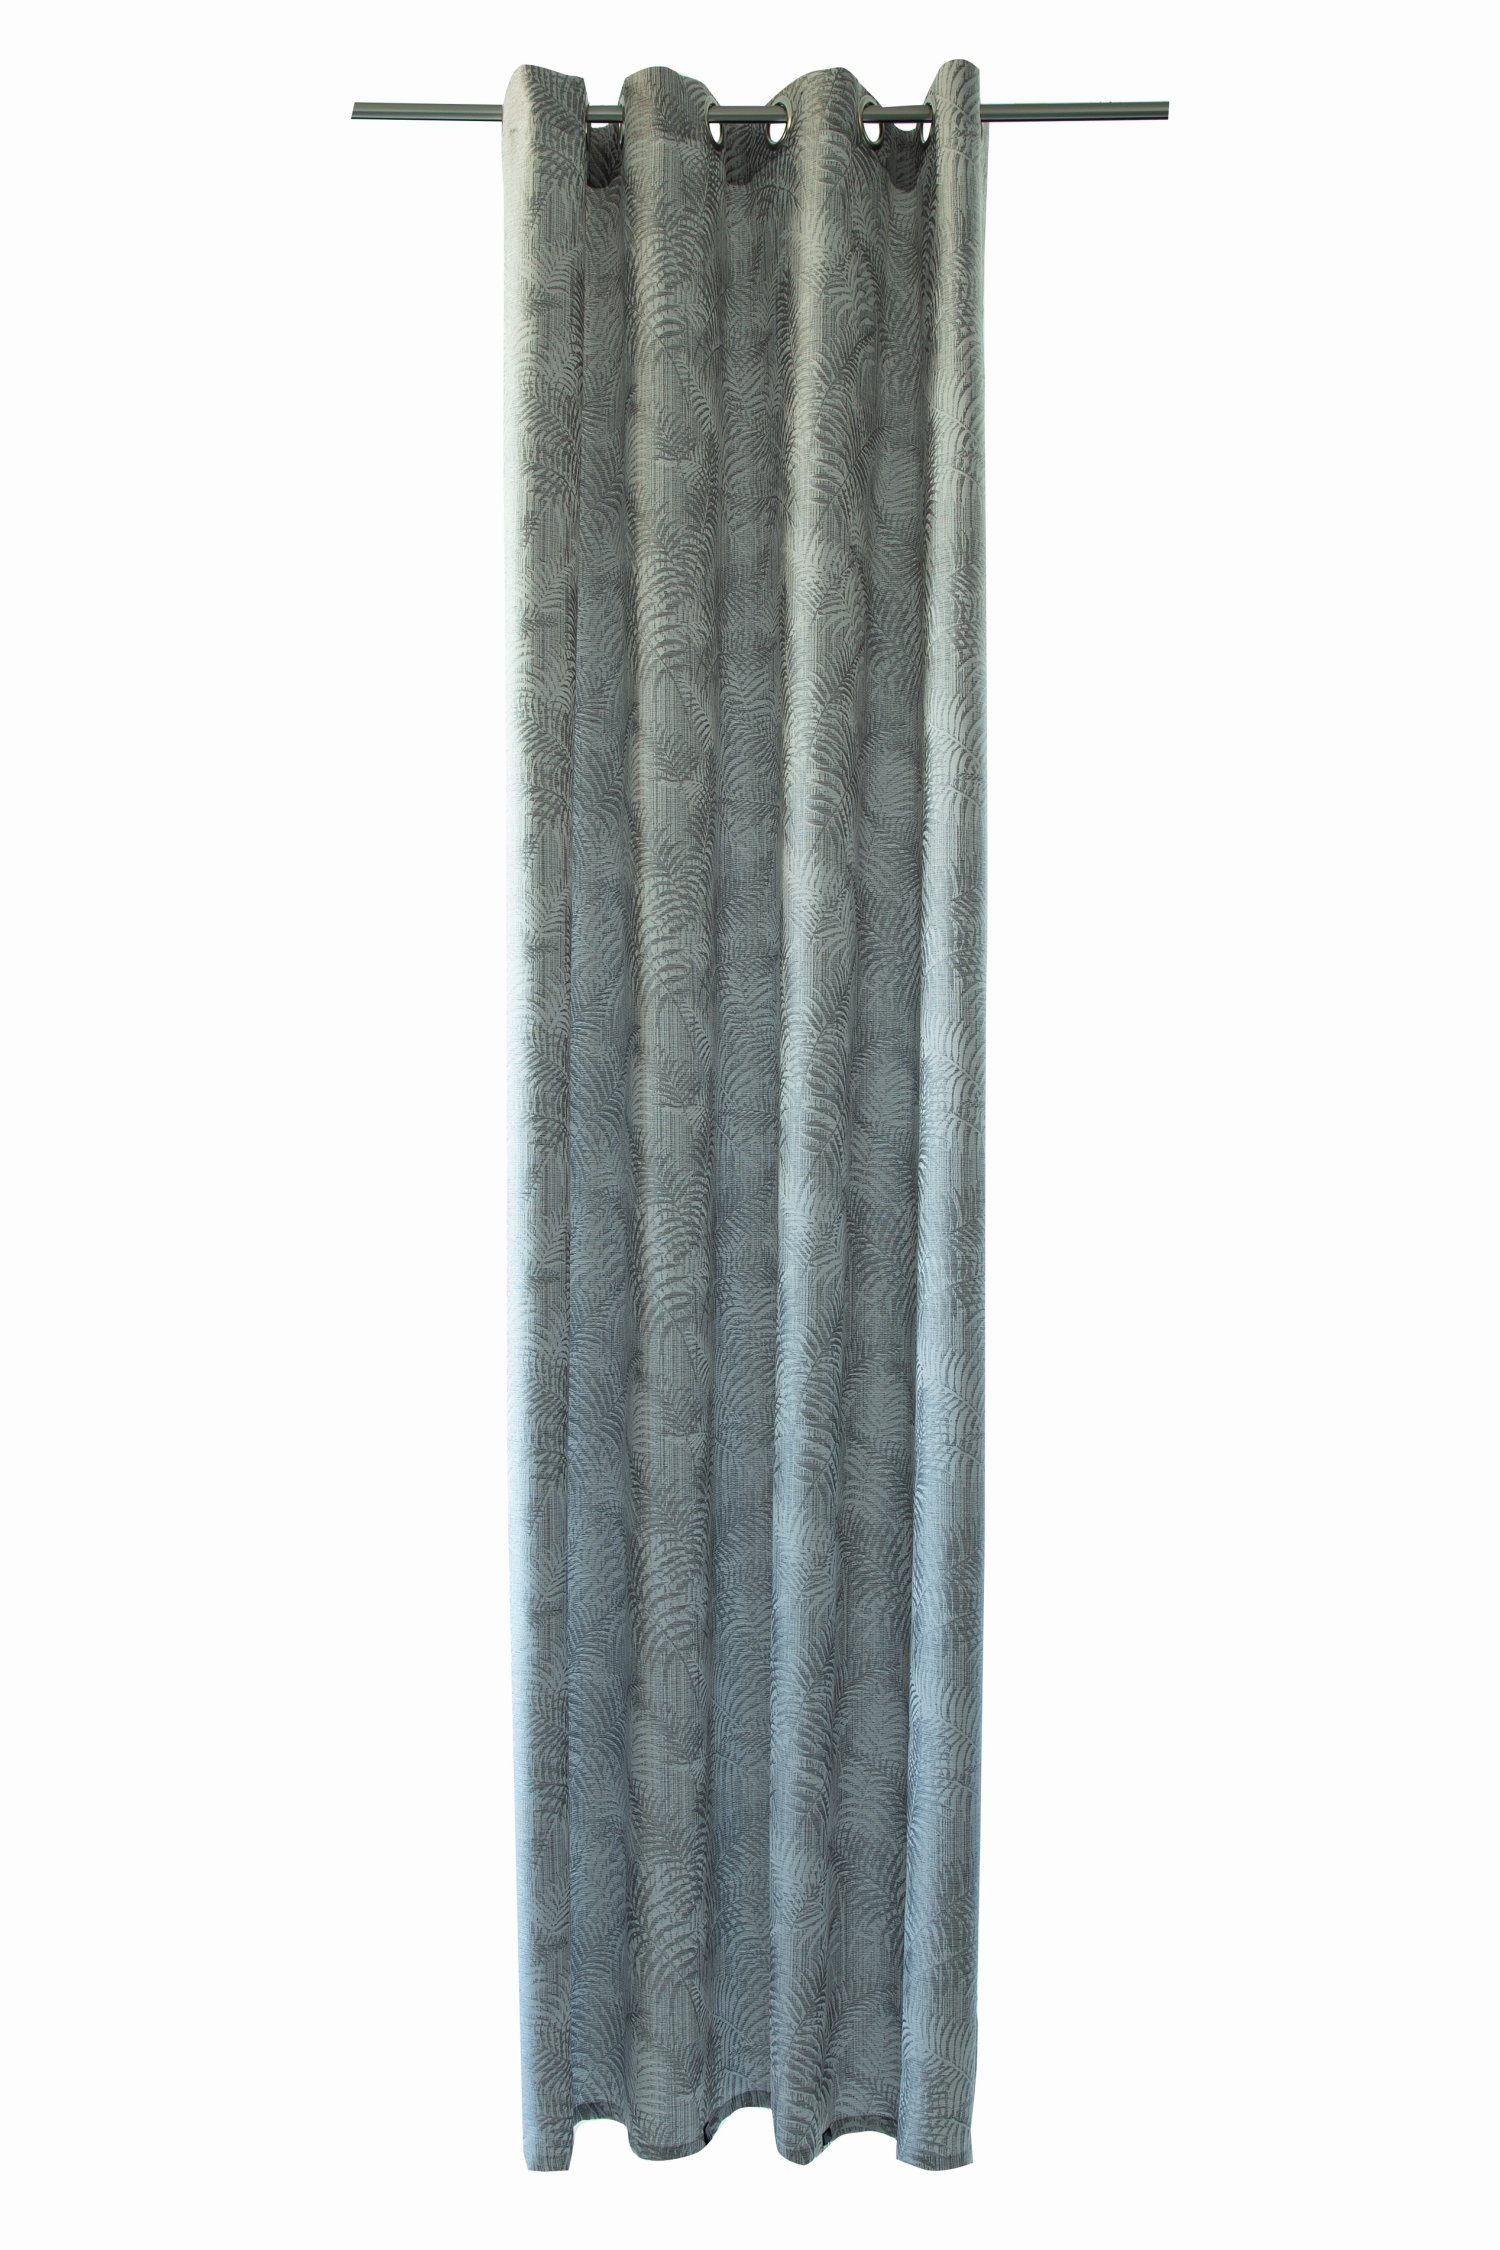 silver Farbe: Ösenschal Lichtschutz, Bali HOMING, 140x245cm Vorhang,